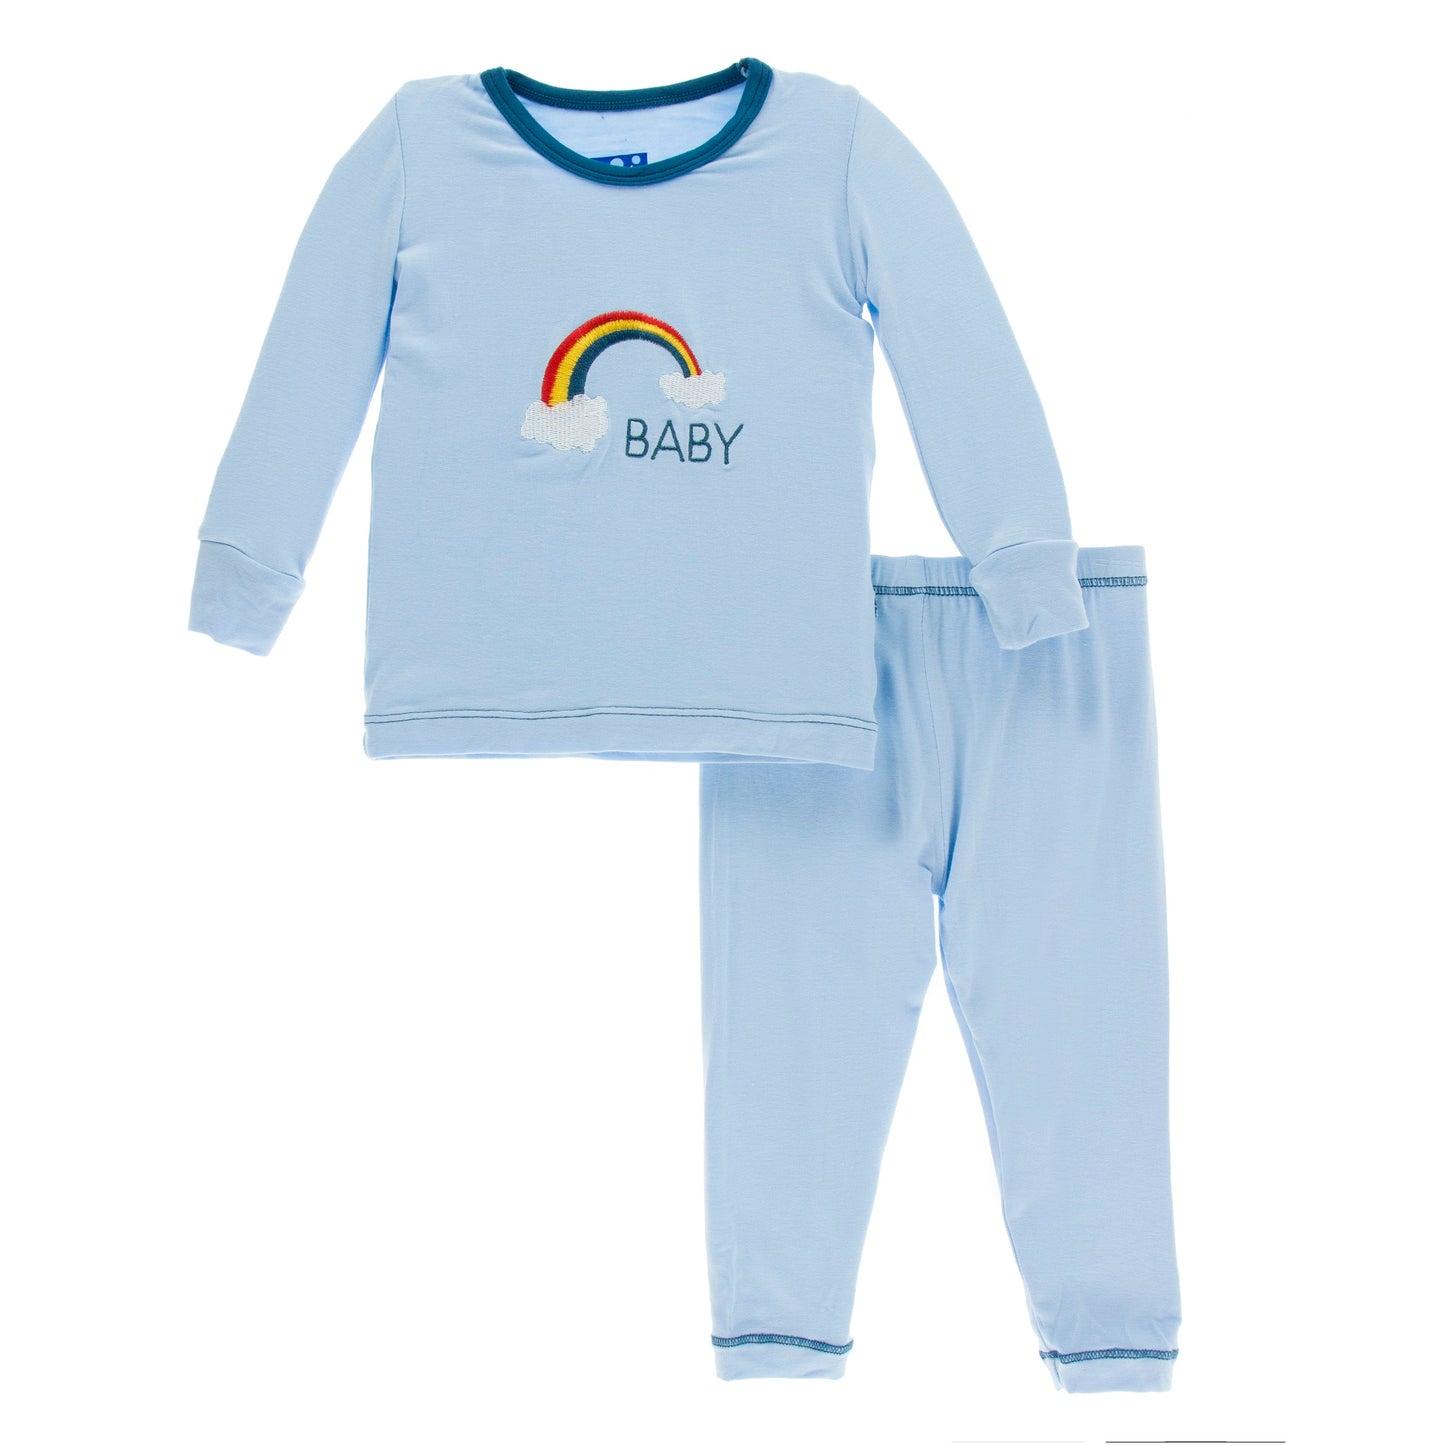 2 Piece Pajama Set (Long Sleeves) - Pond Rainbow Baby